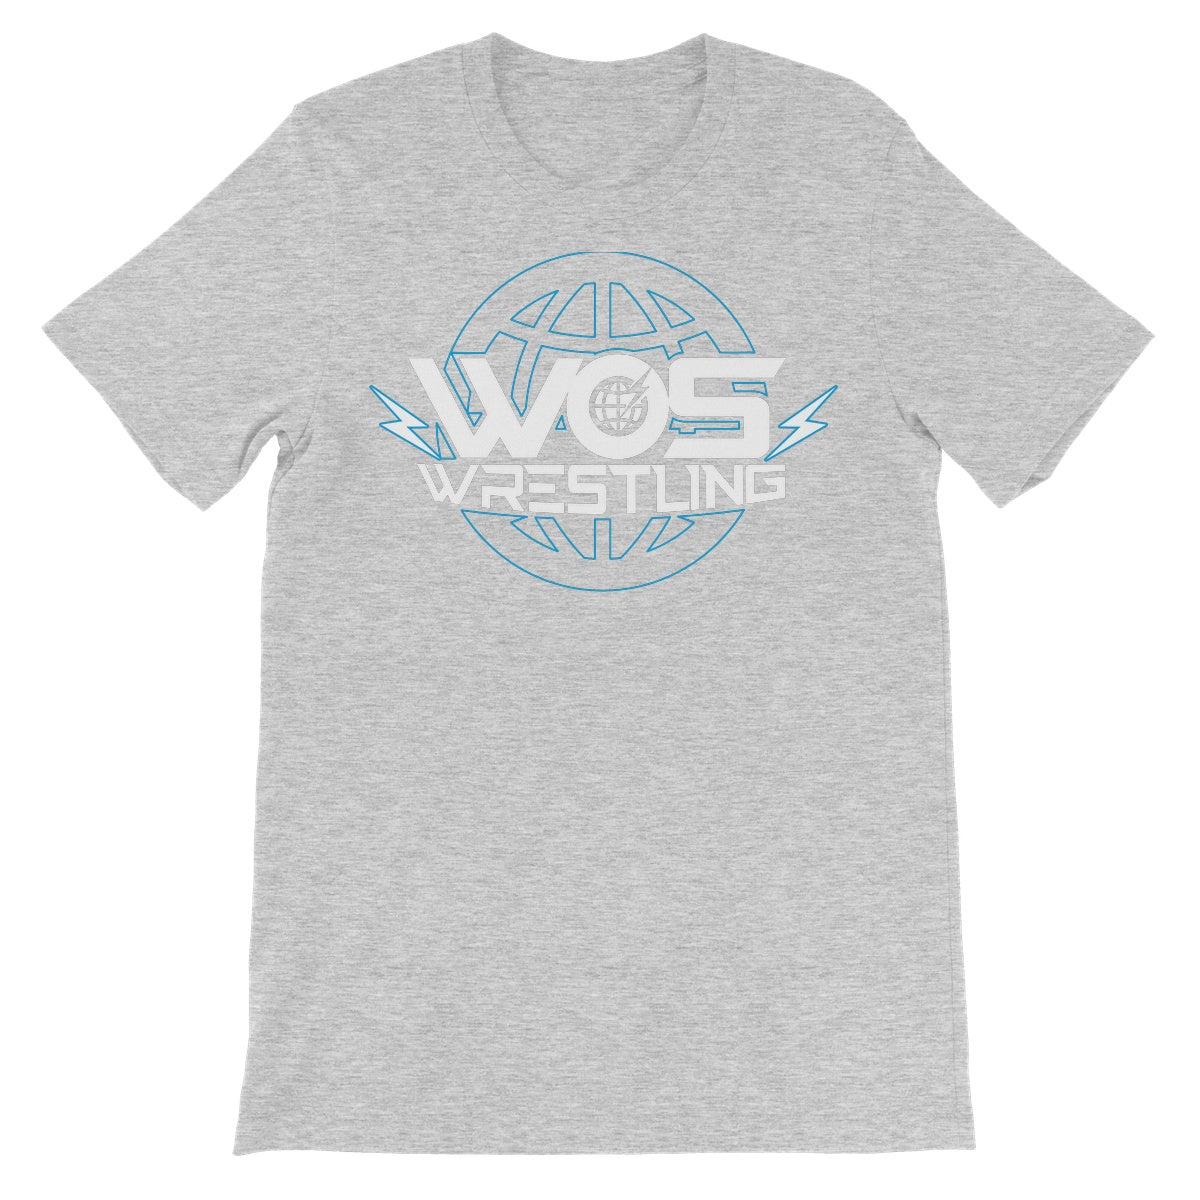 WOS Wrestling Logo Unisex Short Sleeve T-Shirt